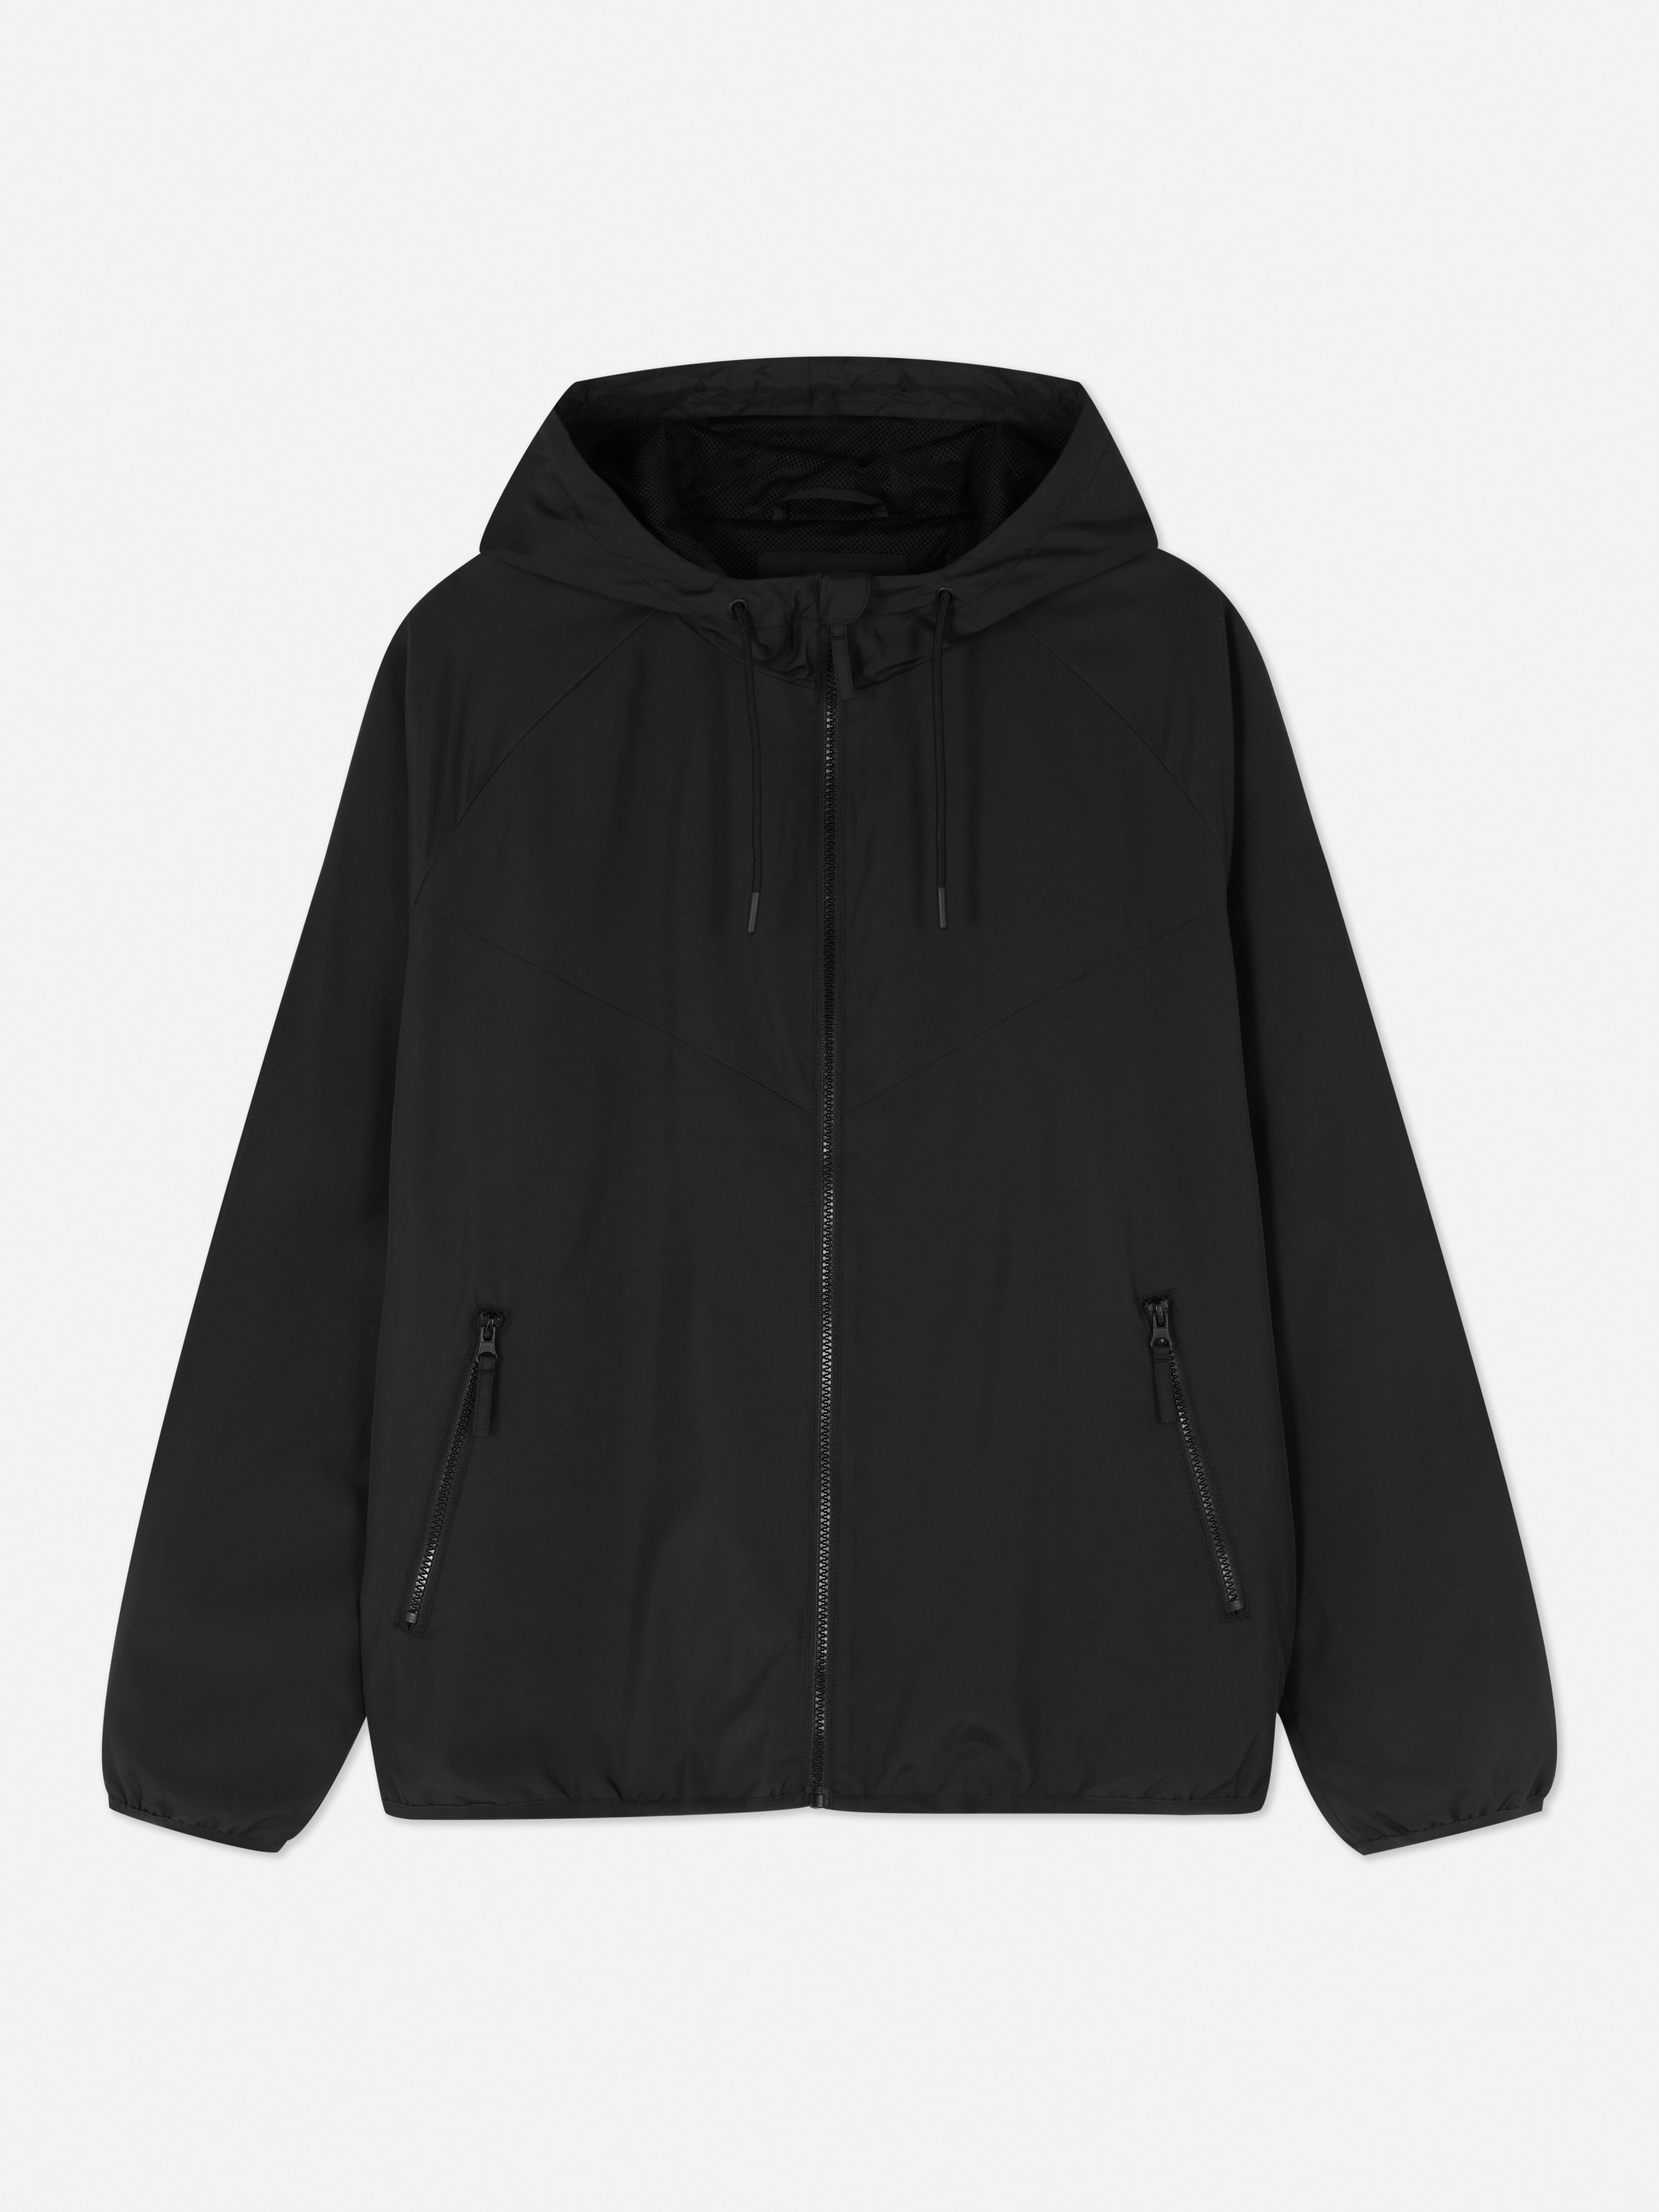 Chaqueta con capucha y cremallera | Abrigos y chaquetas para | Ropa para hombre | Nuestra de moda masculina | Todos los productos Primark | Primark